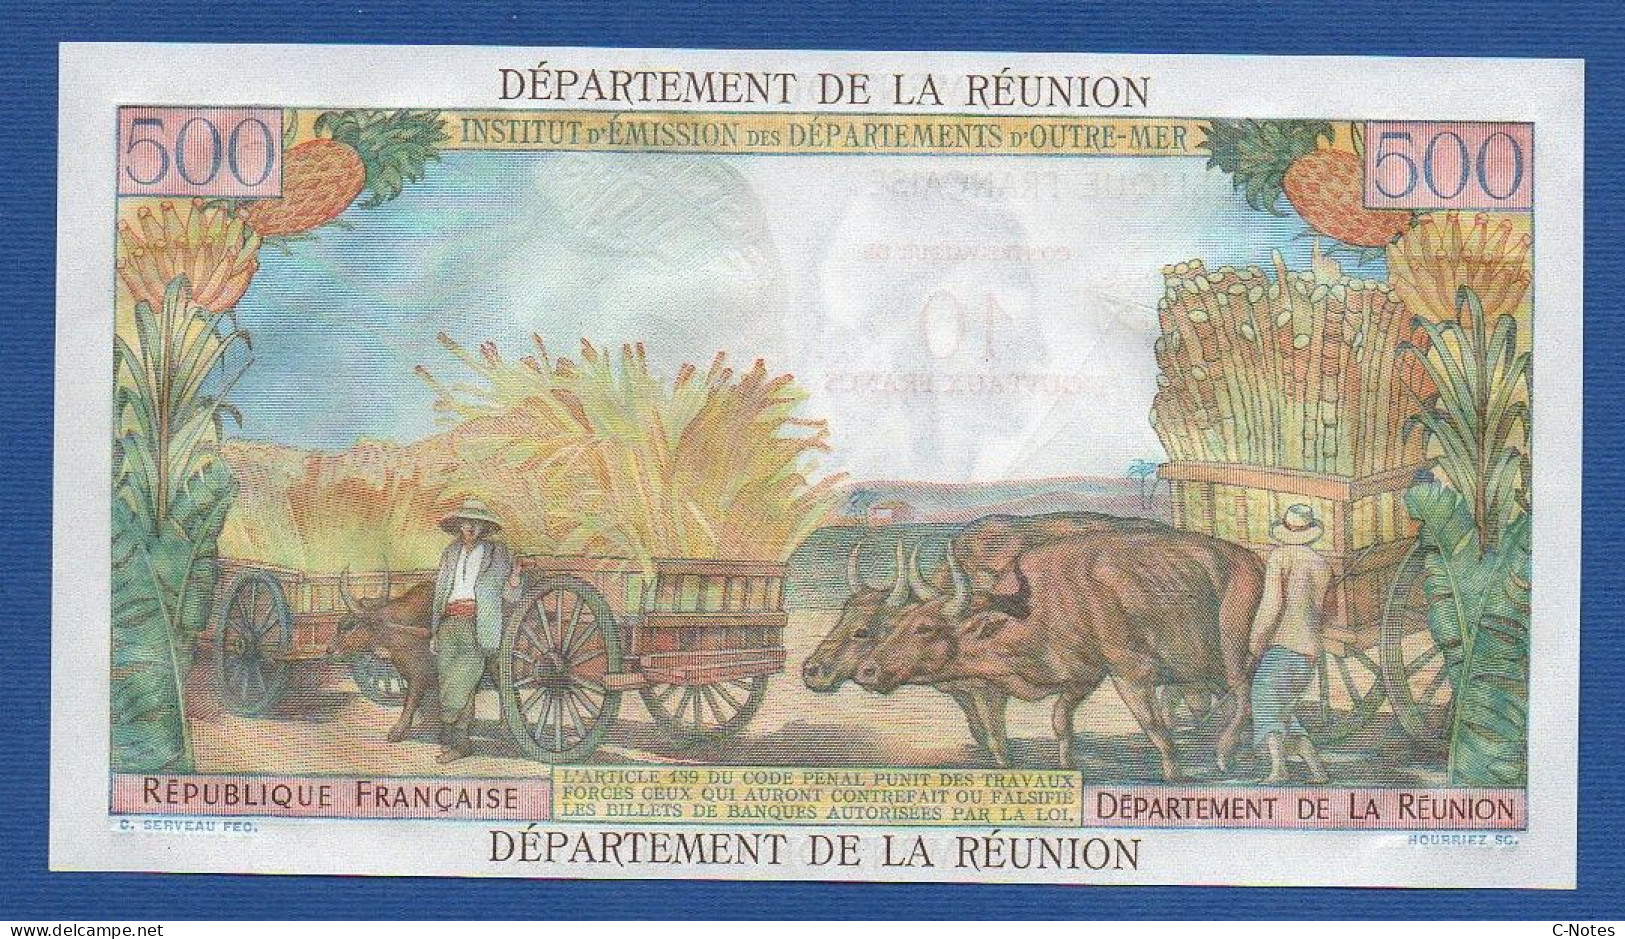 RÉUNION - P.54b – 10 Nouveaux Francs ND (1971) UNC, S/n W.1 82730 - Reunión